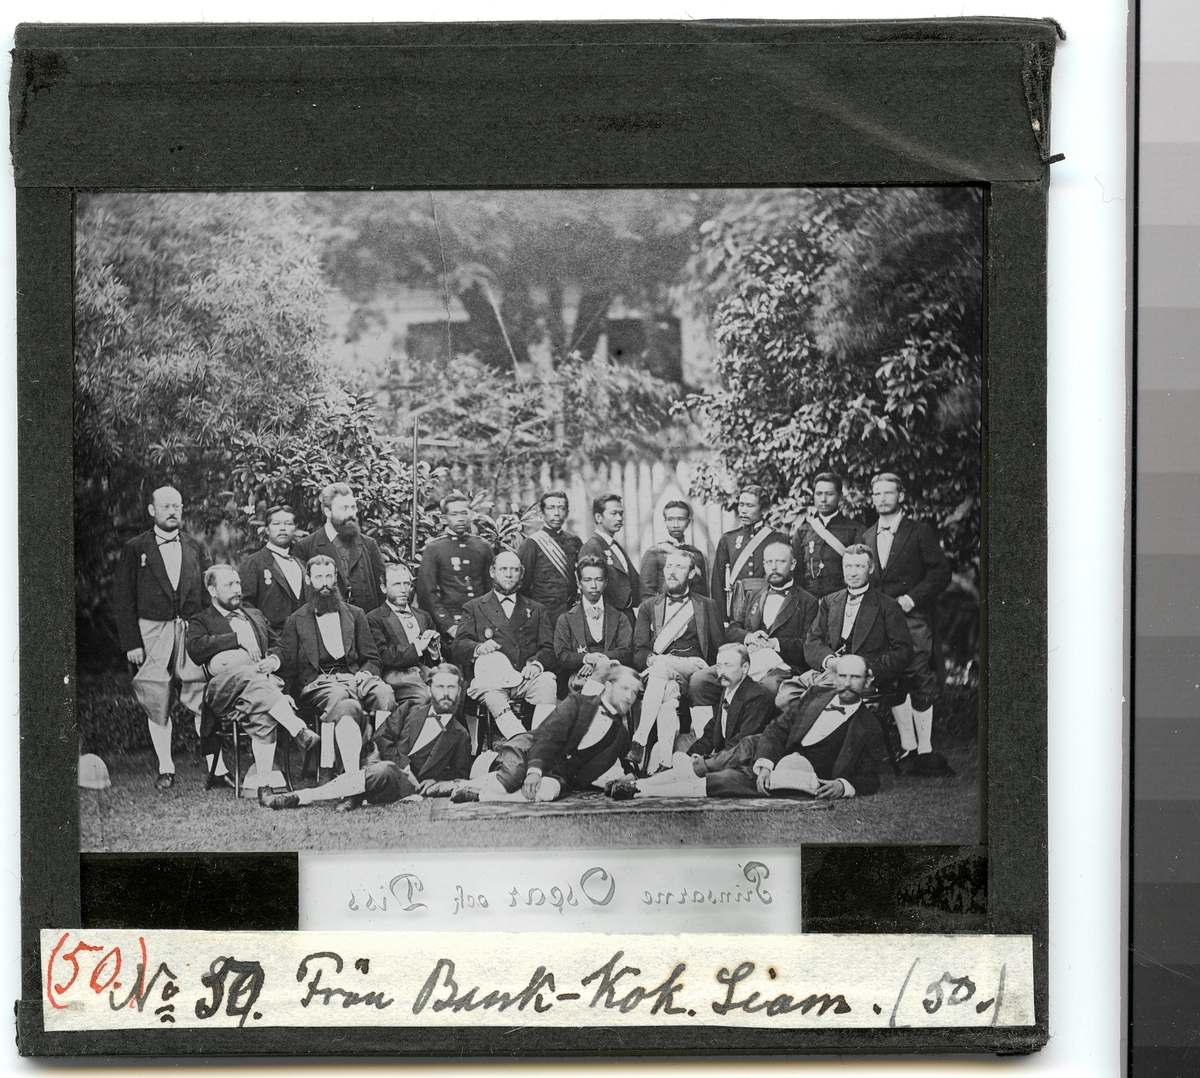 Denna grupporträtt visar officerare från fregatten Vanadis och prins Oscar Bernadotte tillsammans med siamesiska hovman som har samlats för fotografering i en trädgårdsmiljö. Alla bär siamesiska dräkter.